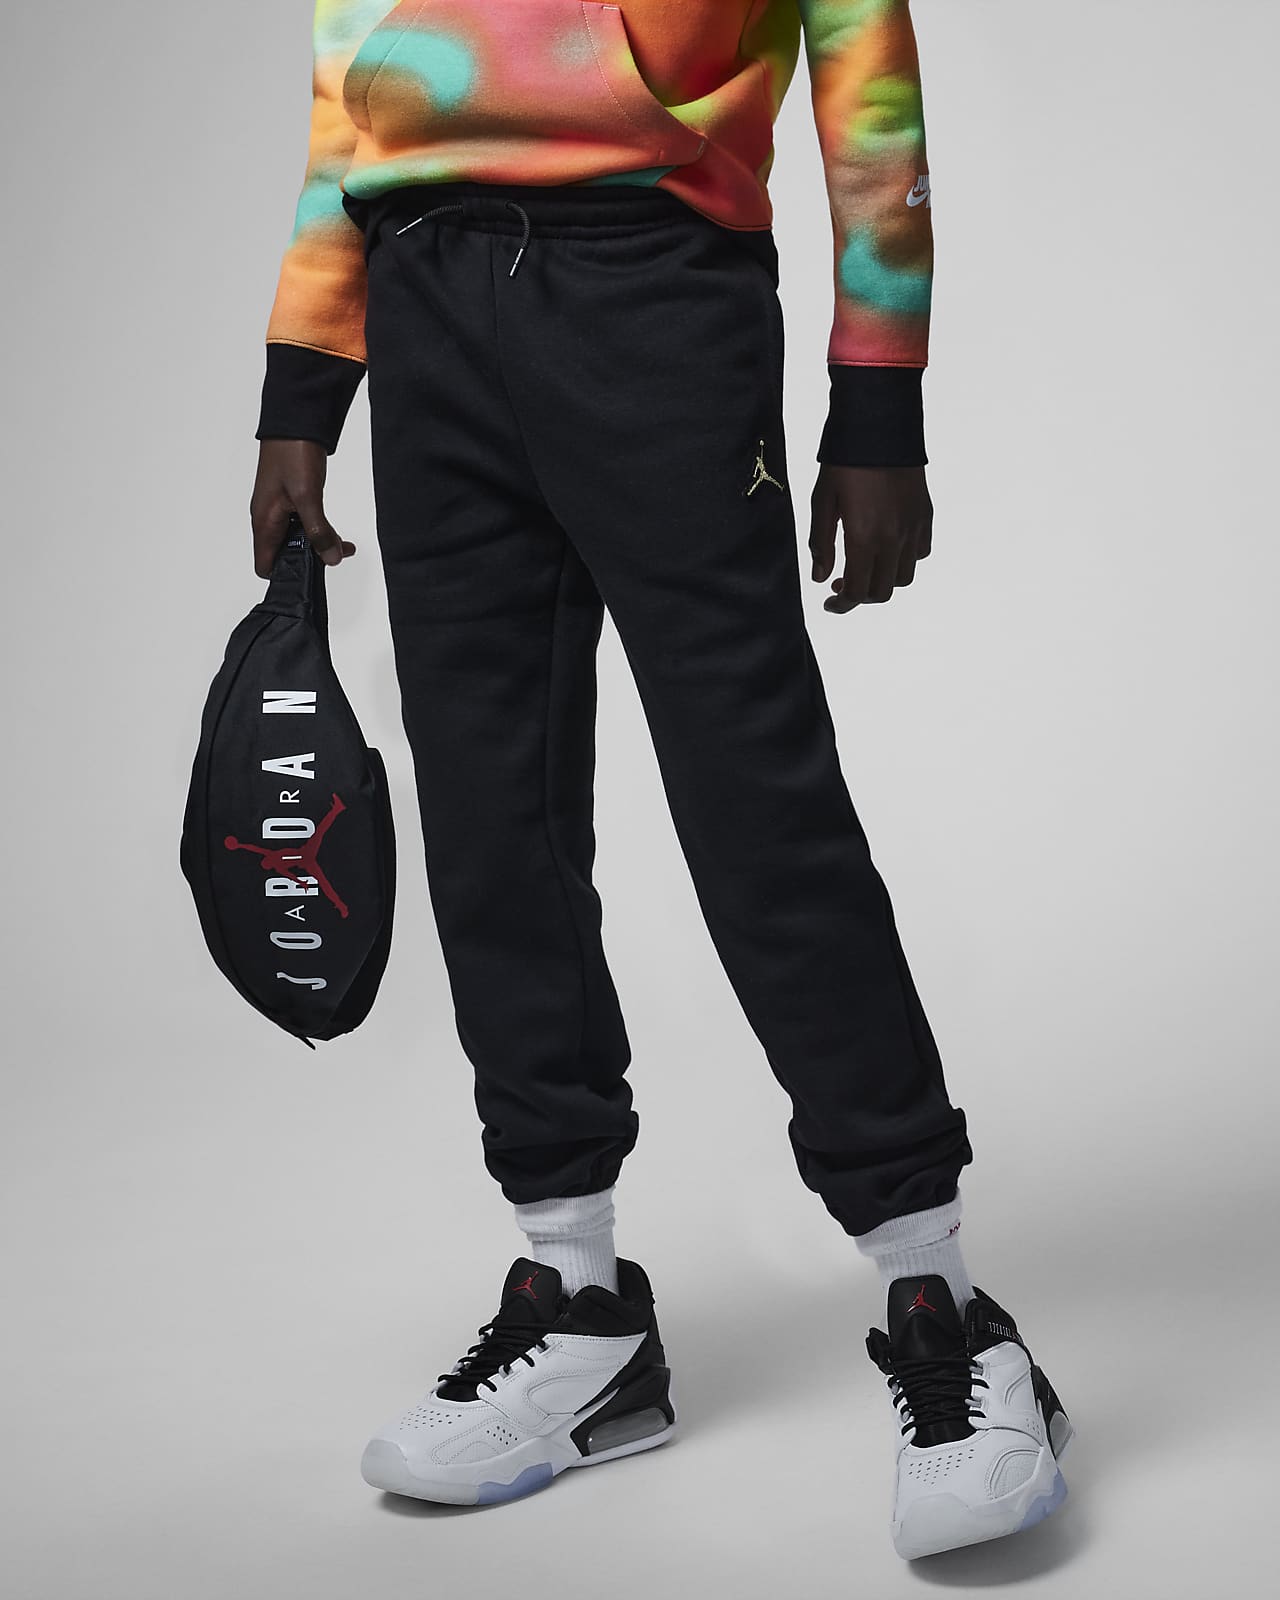 Jordan-bukser til (drenge). Nike DK